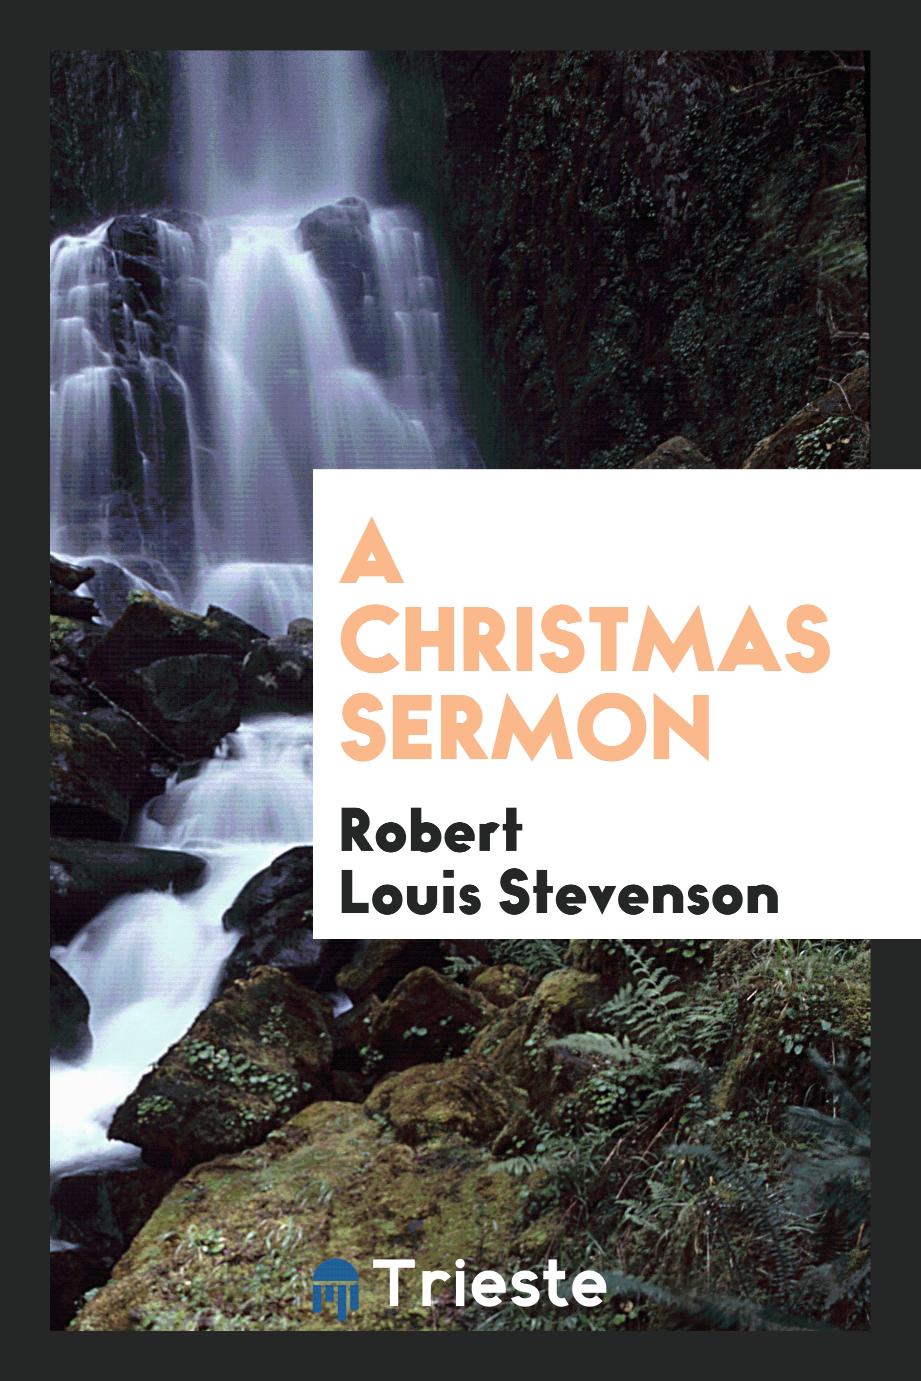 A Christmas sermon